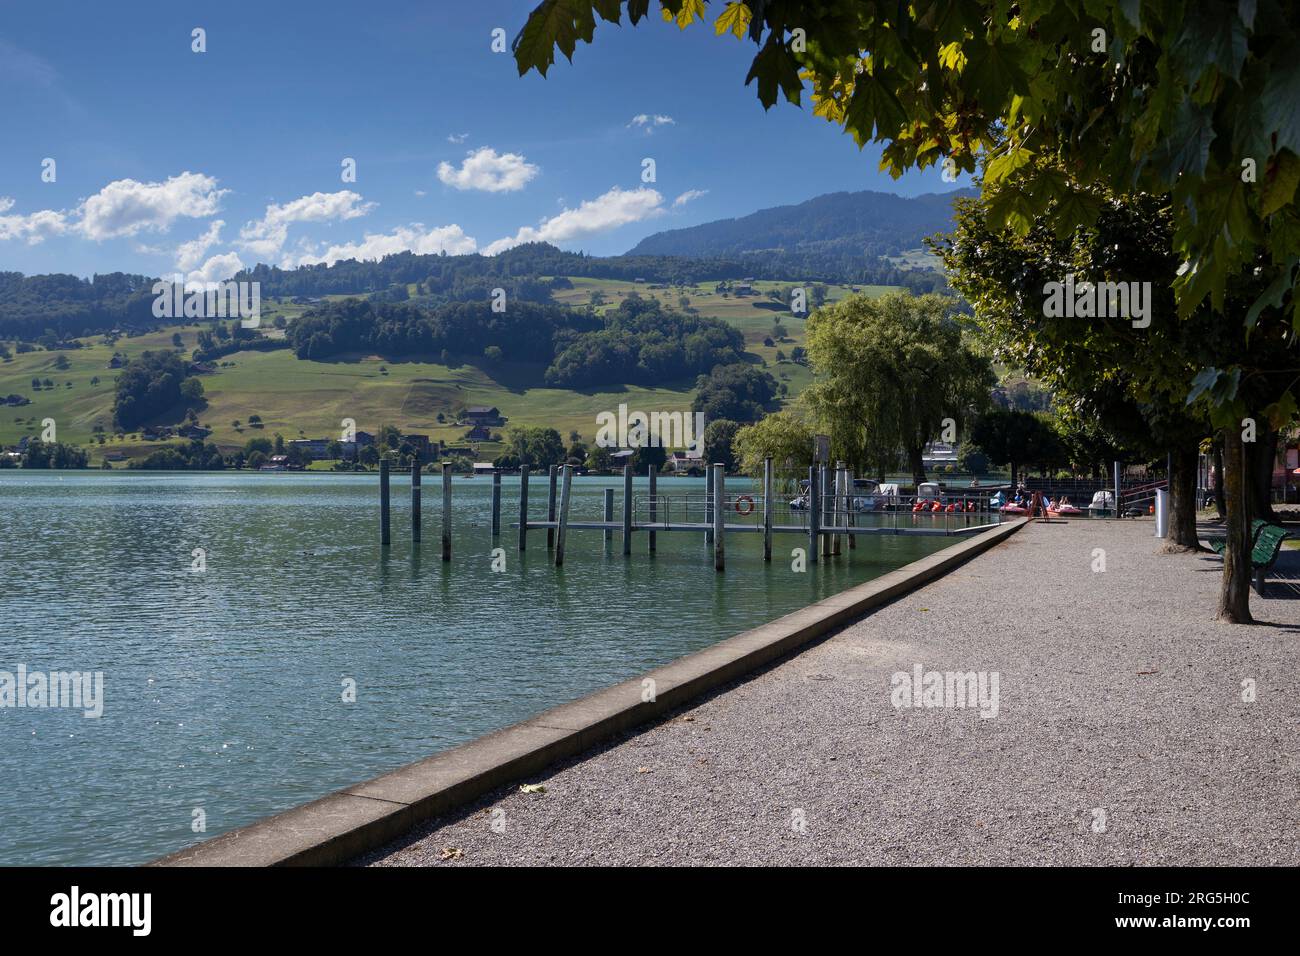 Vue sur le lac Sarnersee et la pittoresque promenade au bord du lac à Sarnen dans le canton de Lucerne en Suisse. Paysage d'été suisse pittoresque avec copie Banque D'Images